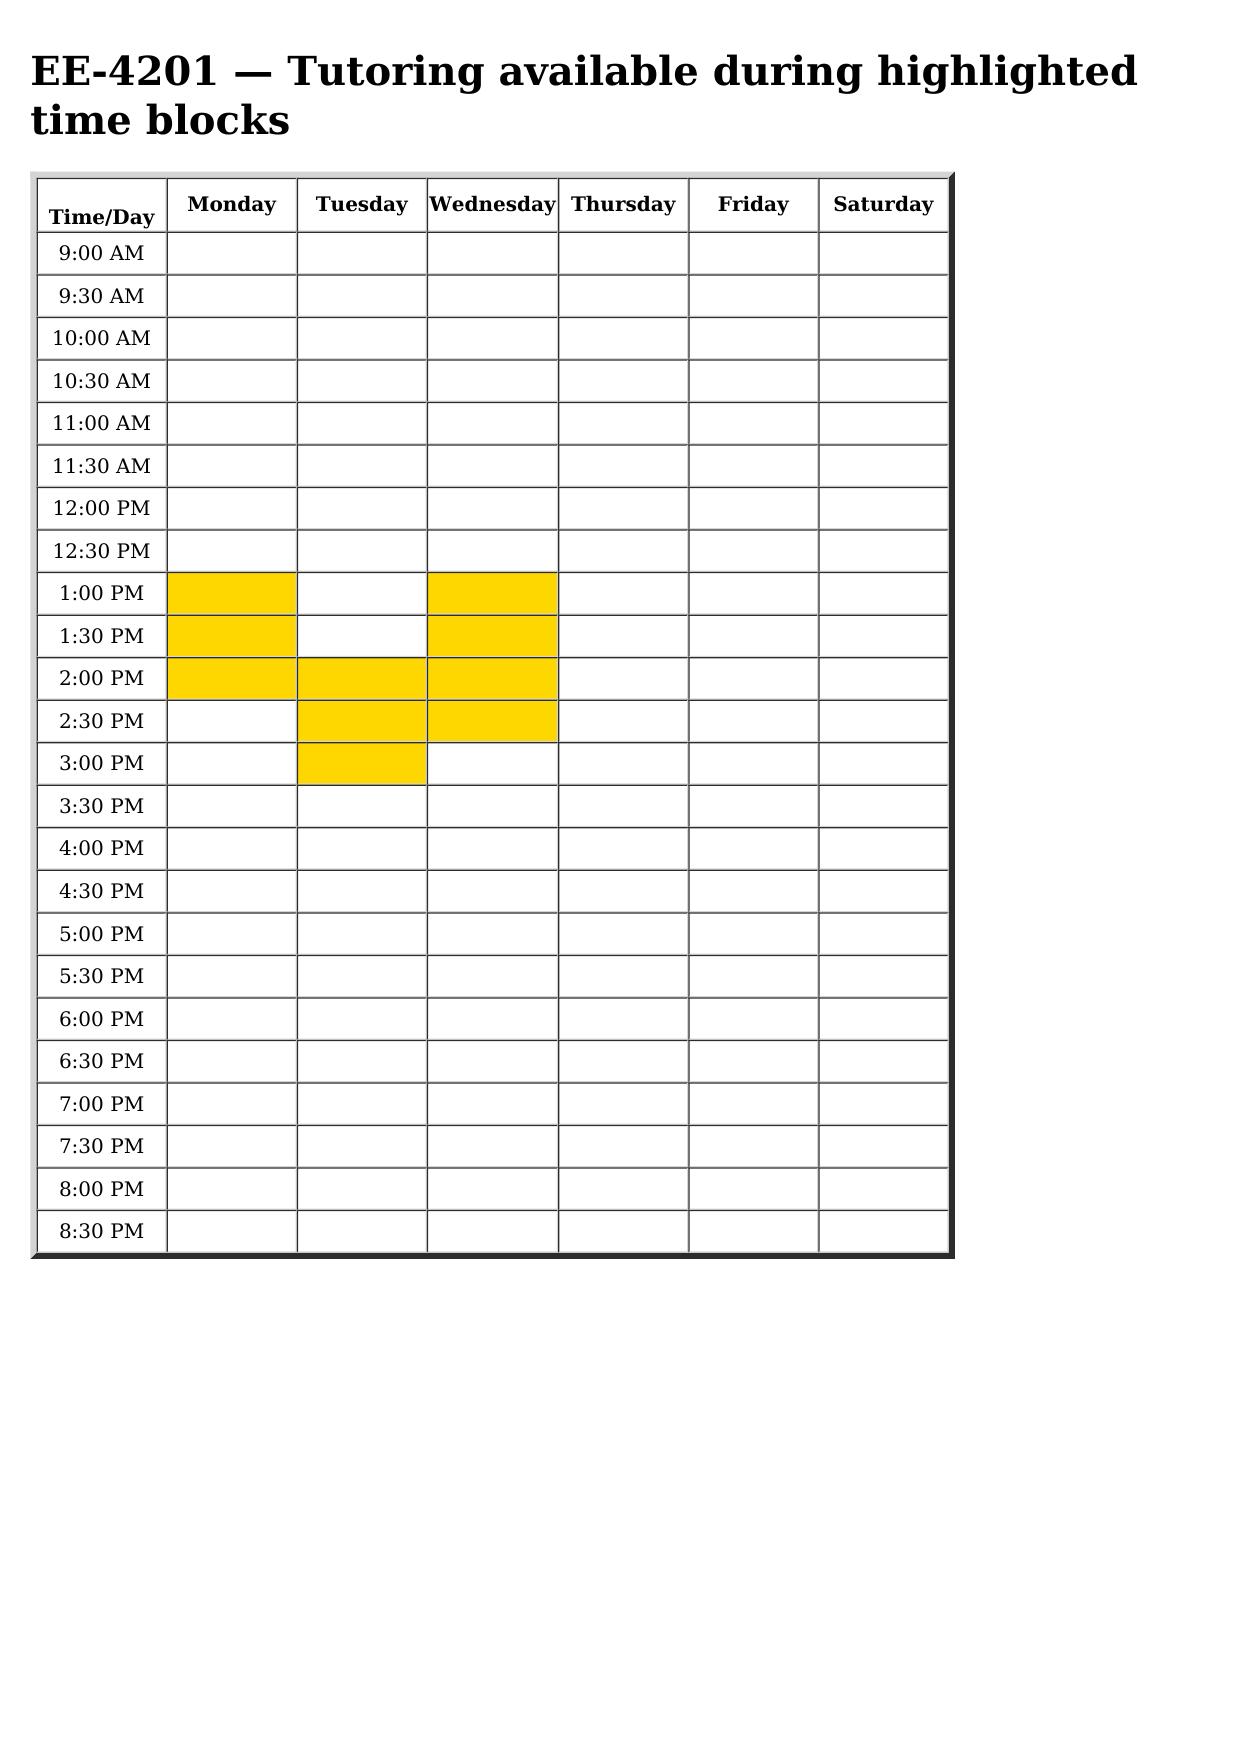 ee 4201 schedule